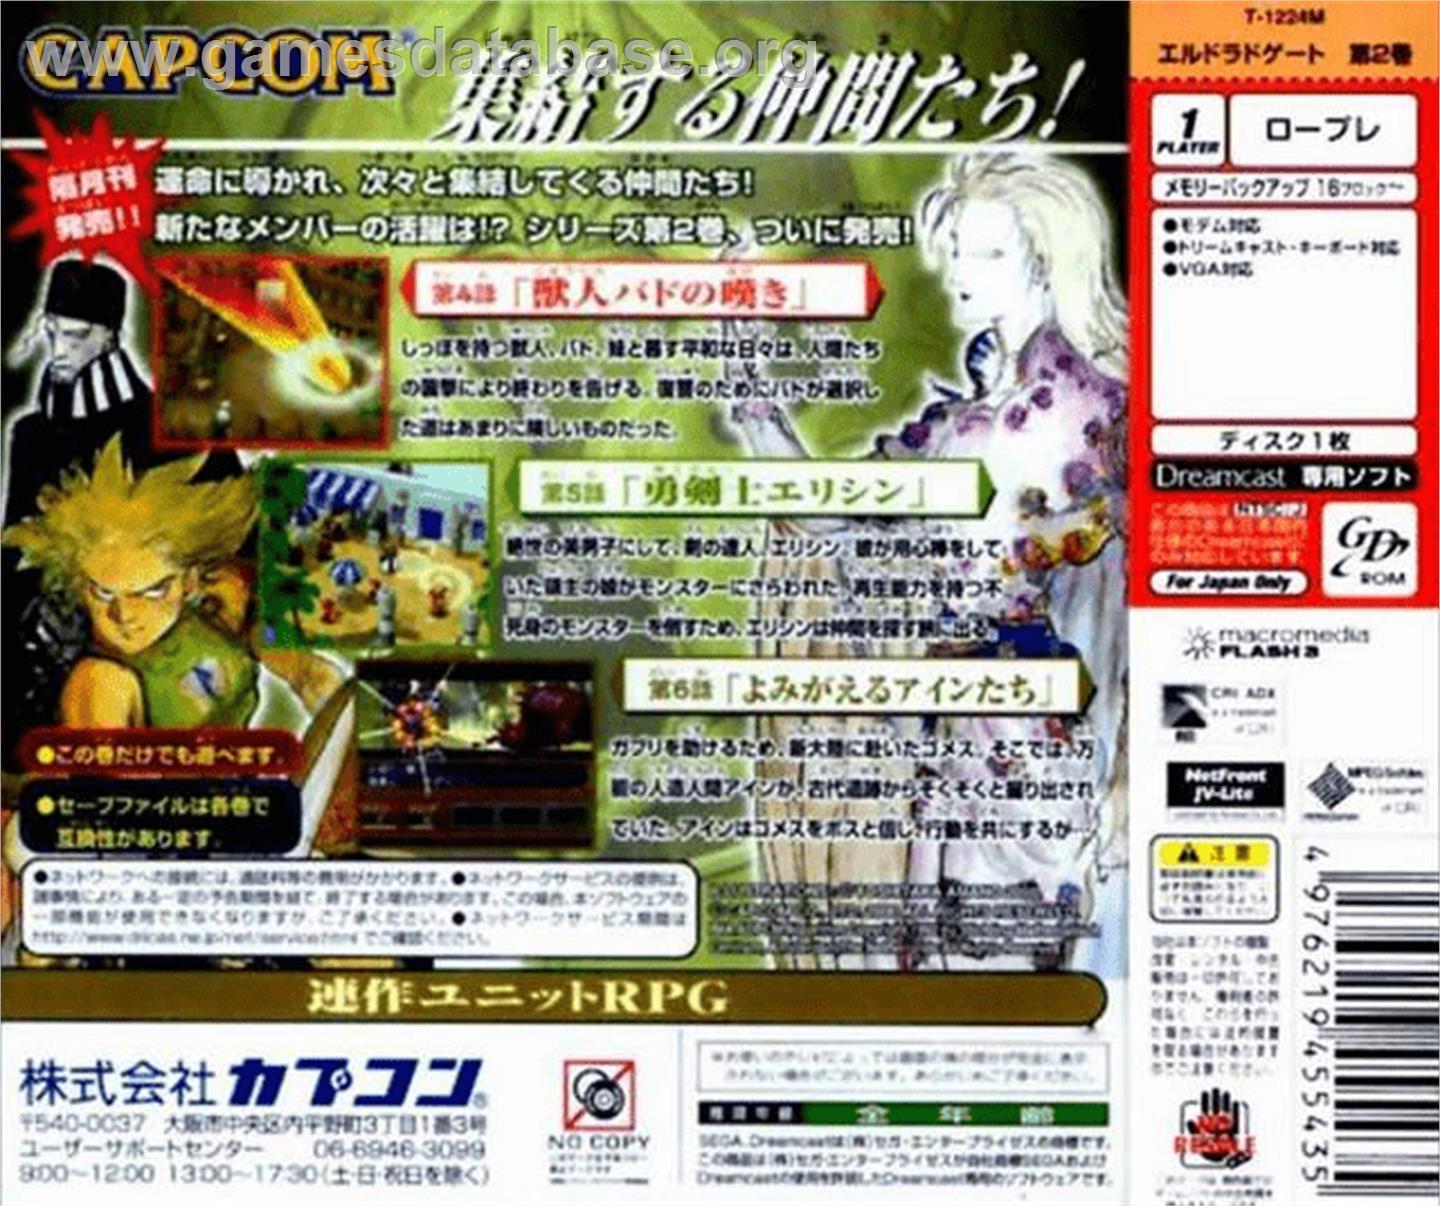 Eldorado Gate Volume 2 - Sega Dreamcast - Artwork - Box Back